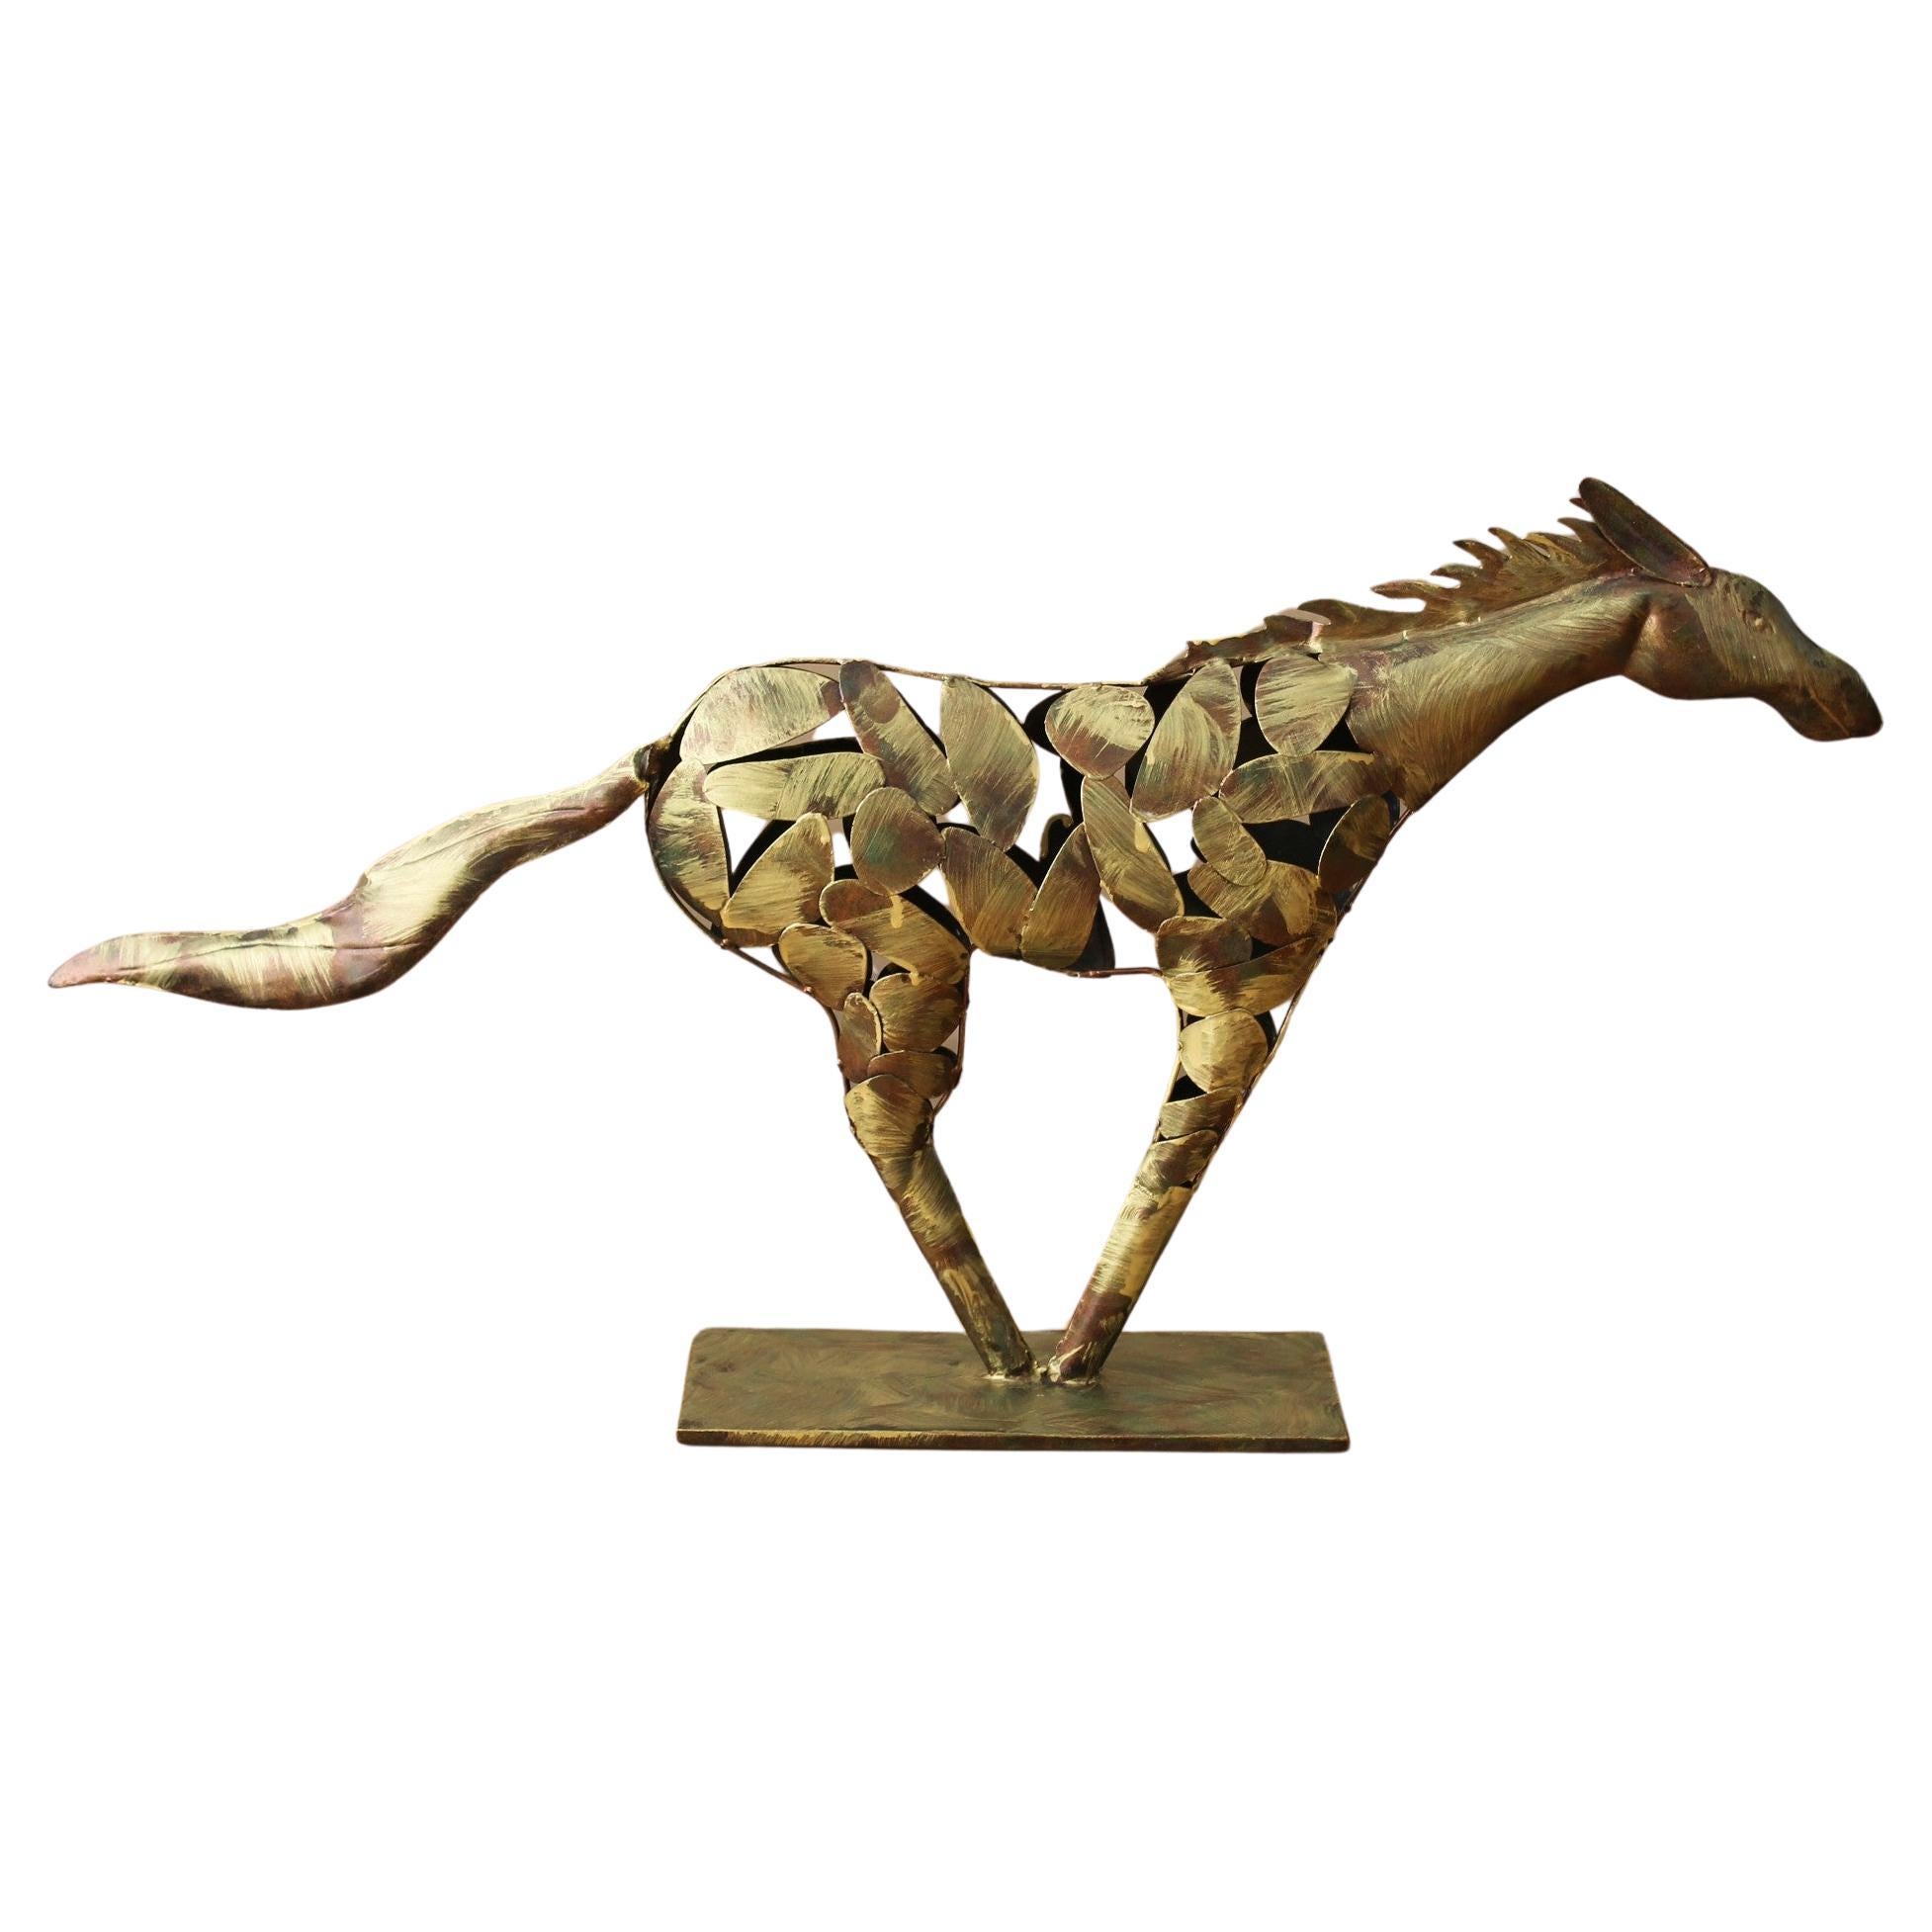 Brutalist Polychromed Copper Direct Metal Horse Sculpture! Monumental 33" wide! For Sale